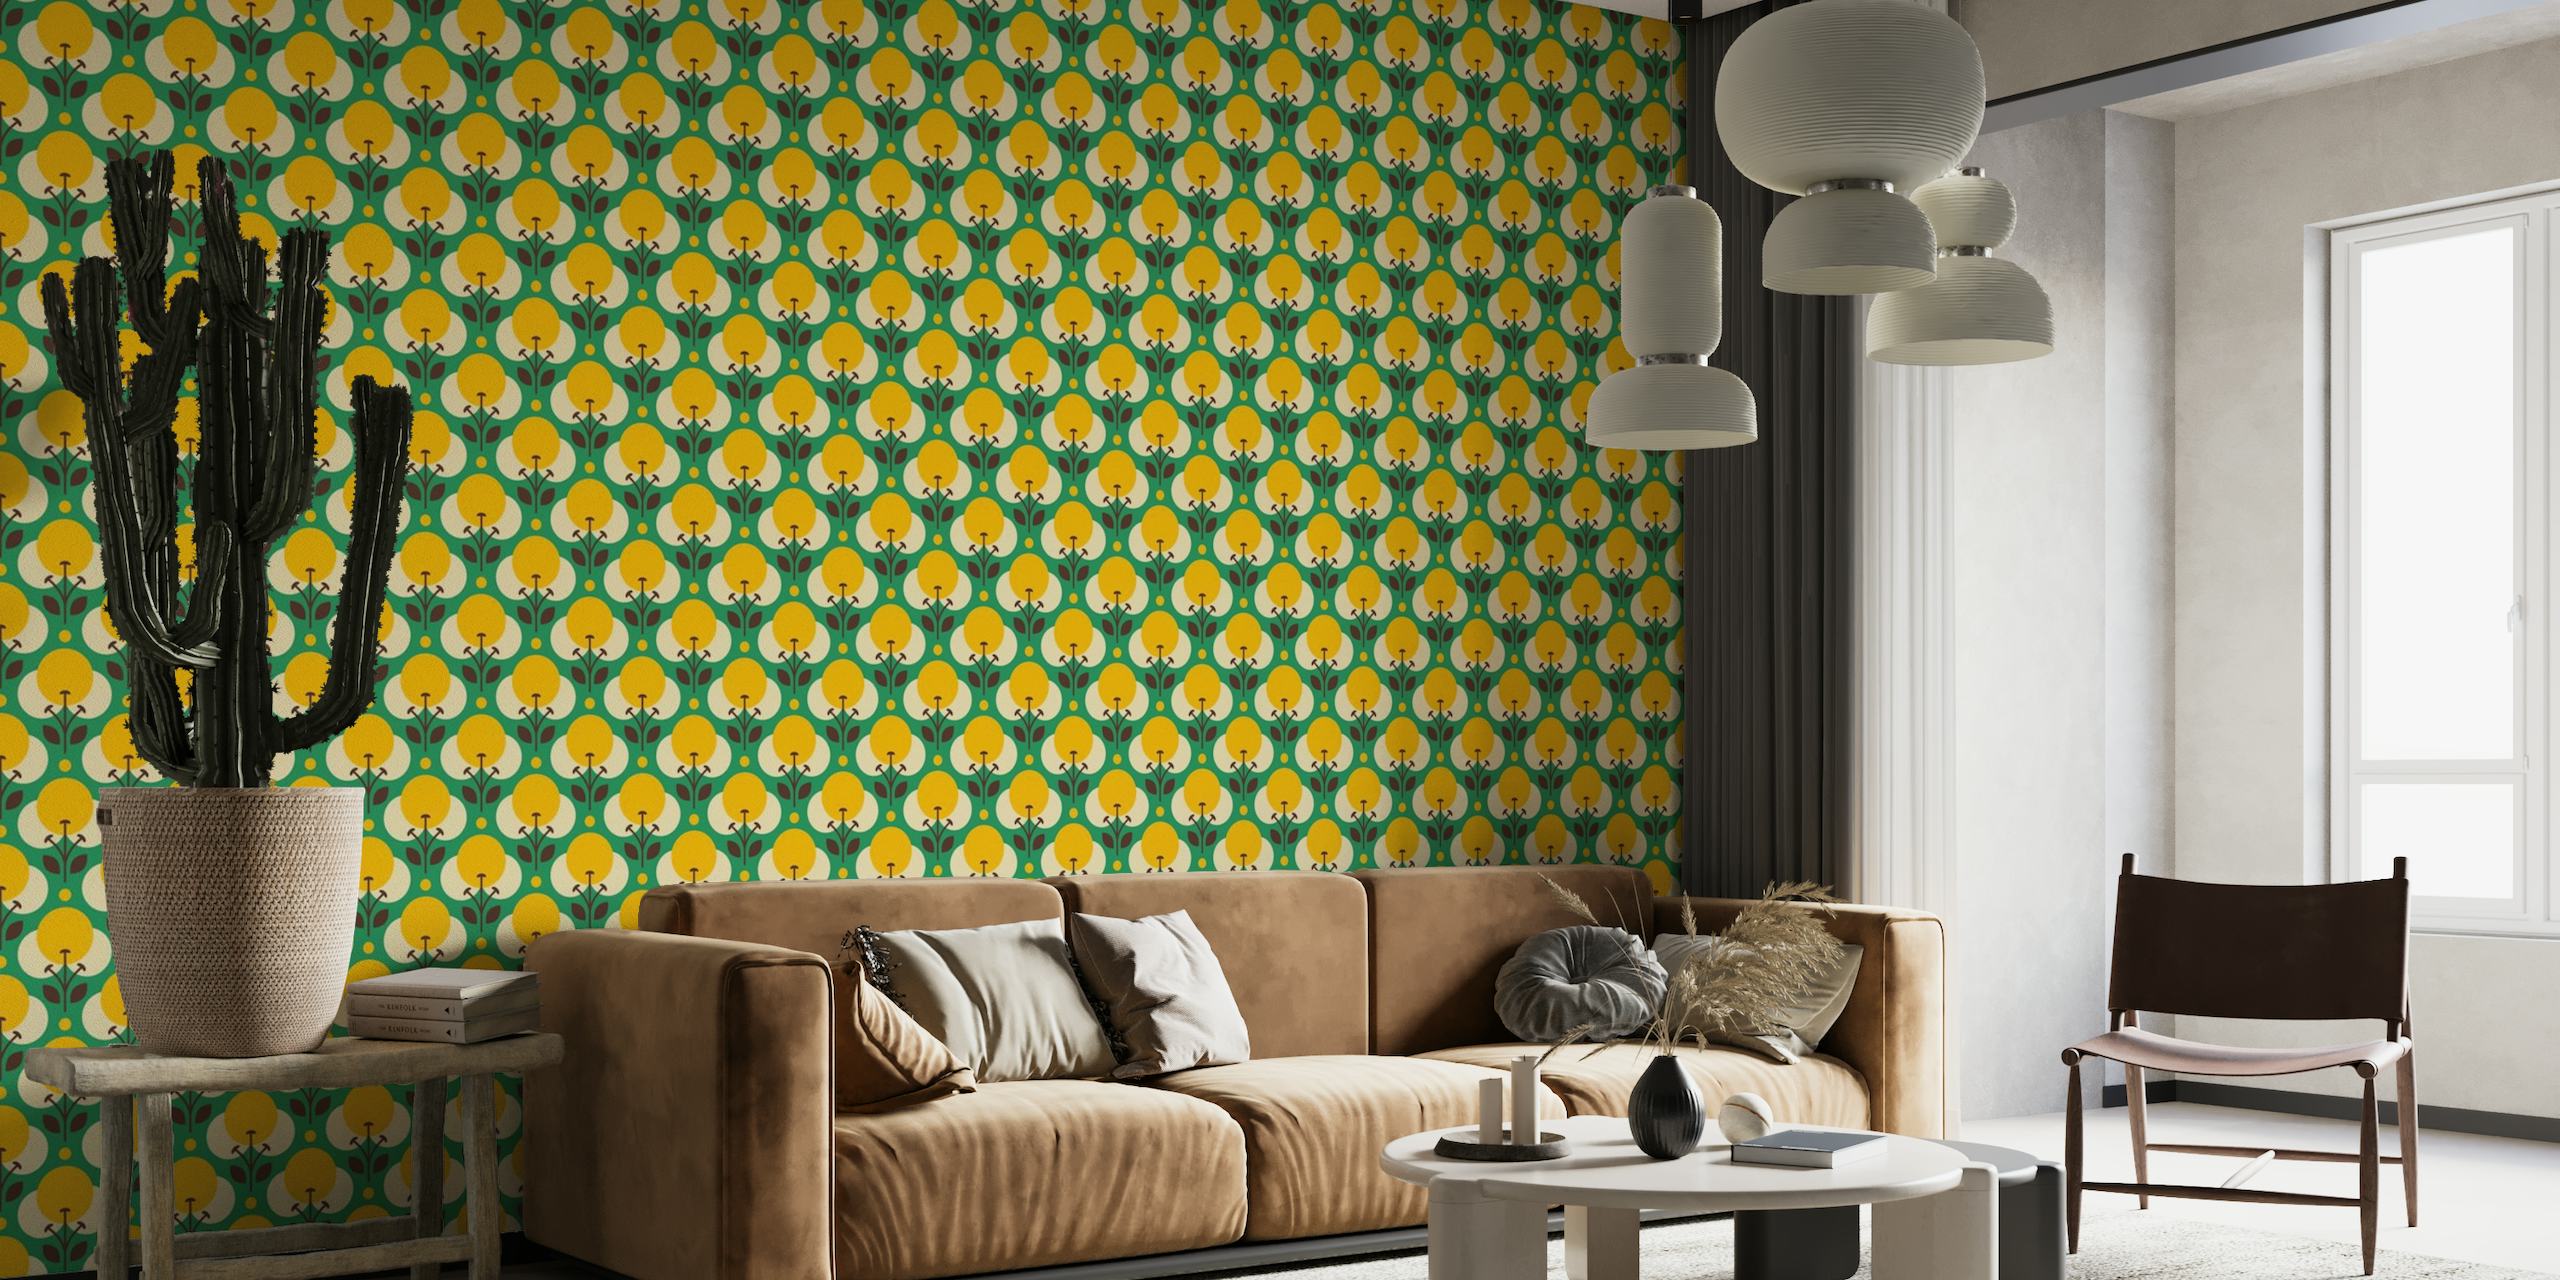 2009 - Retro geometrical flowers pattern, green wallpaper